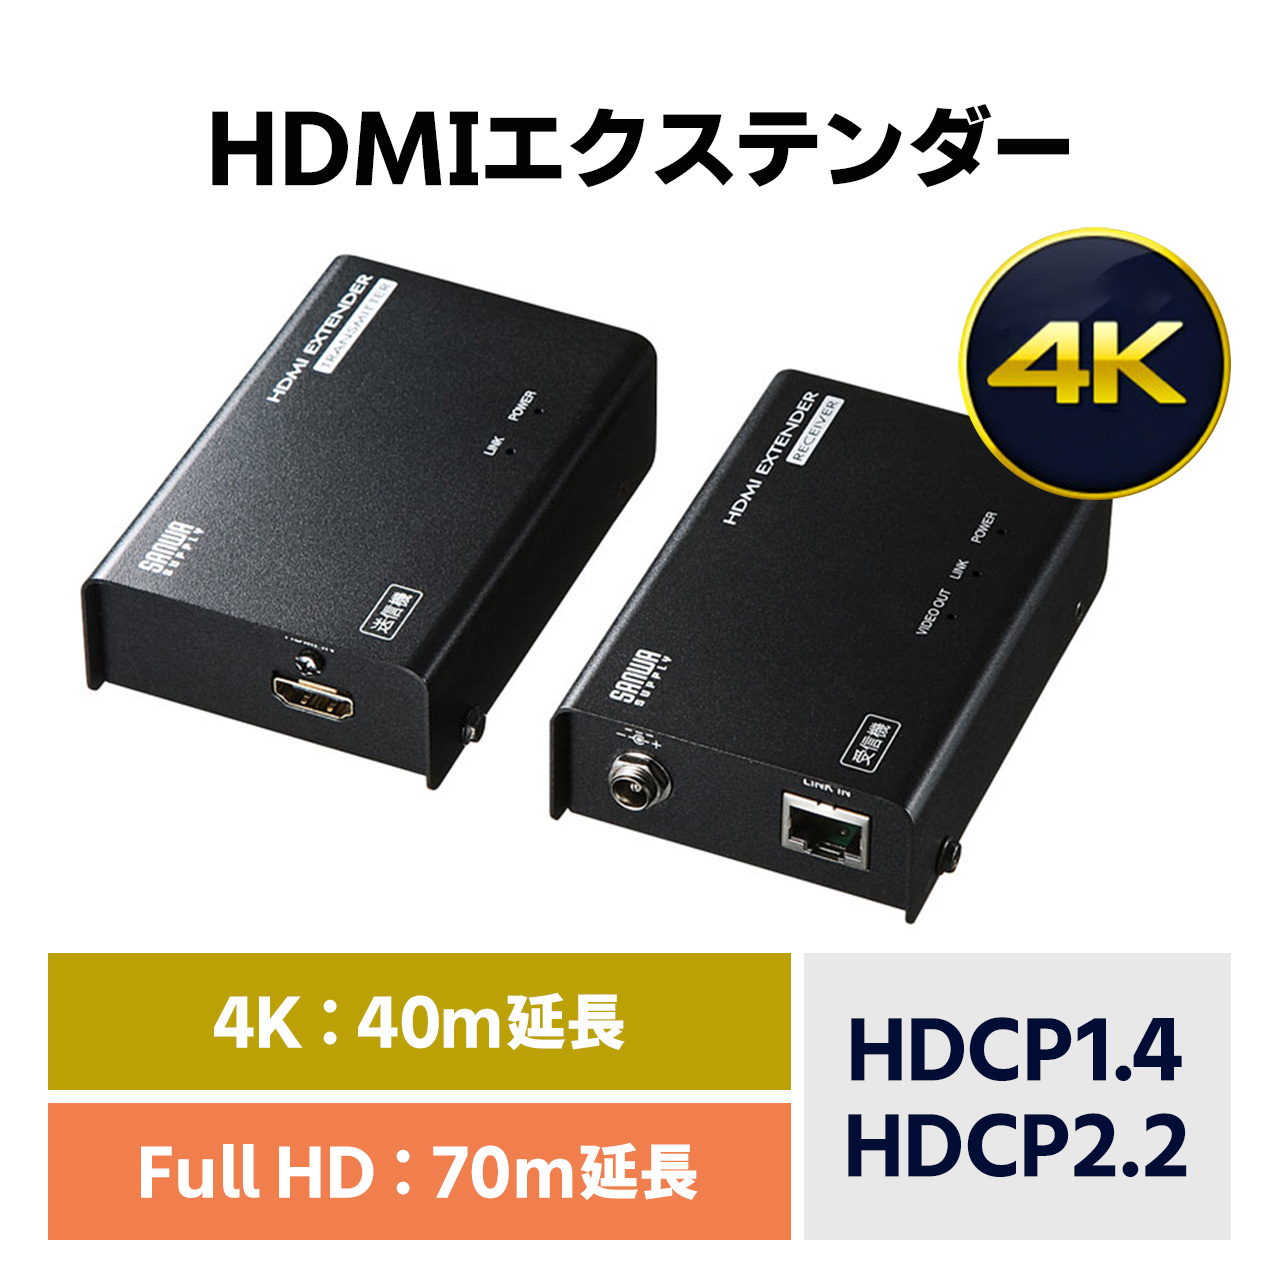 Amazon.co.jp: GoodsLand DisplayPort ディスプレイポート HDMI 変換アダプタ 4K 変換ケーブル 変換コネクタ  2K 1080p 対応 GD-DPTOHDMI-4K30 : パソコン・周辺機器